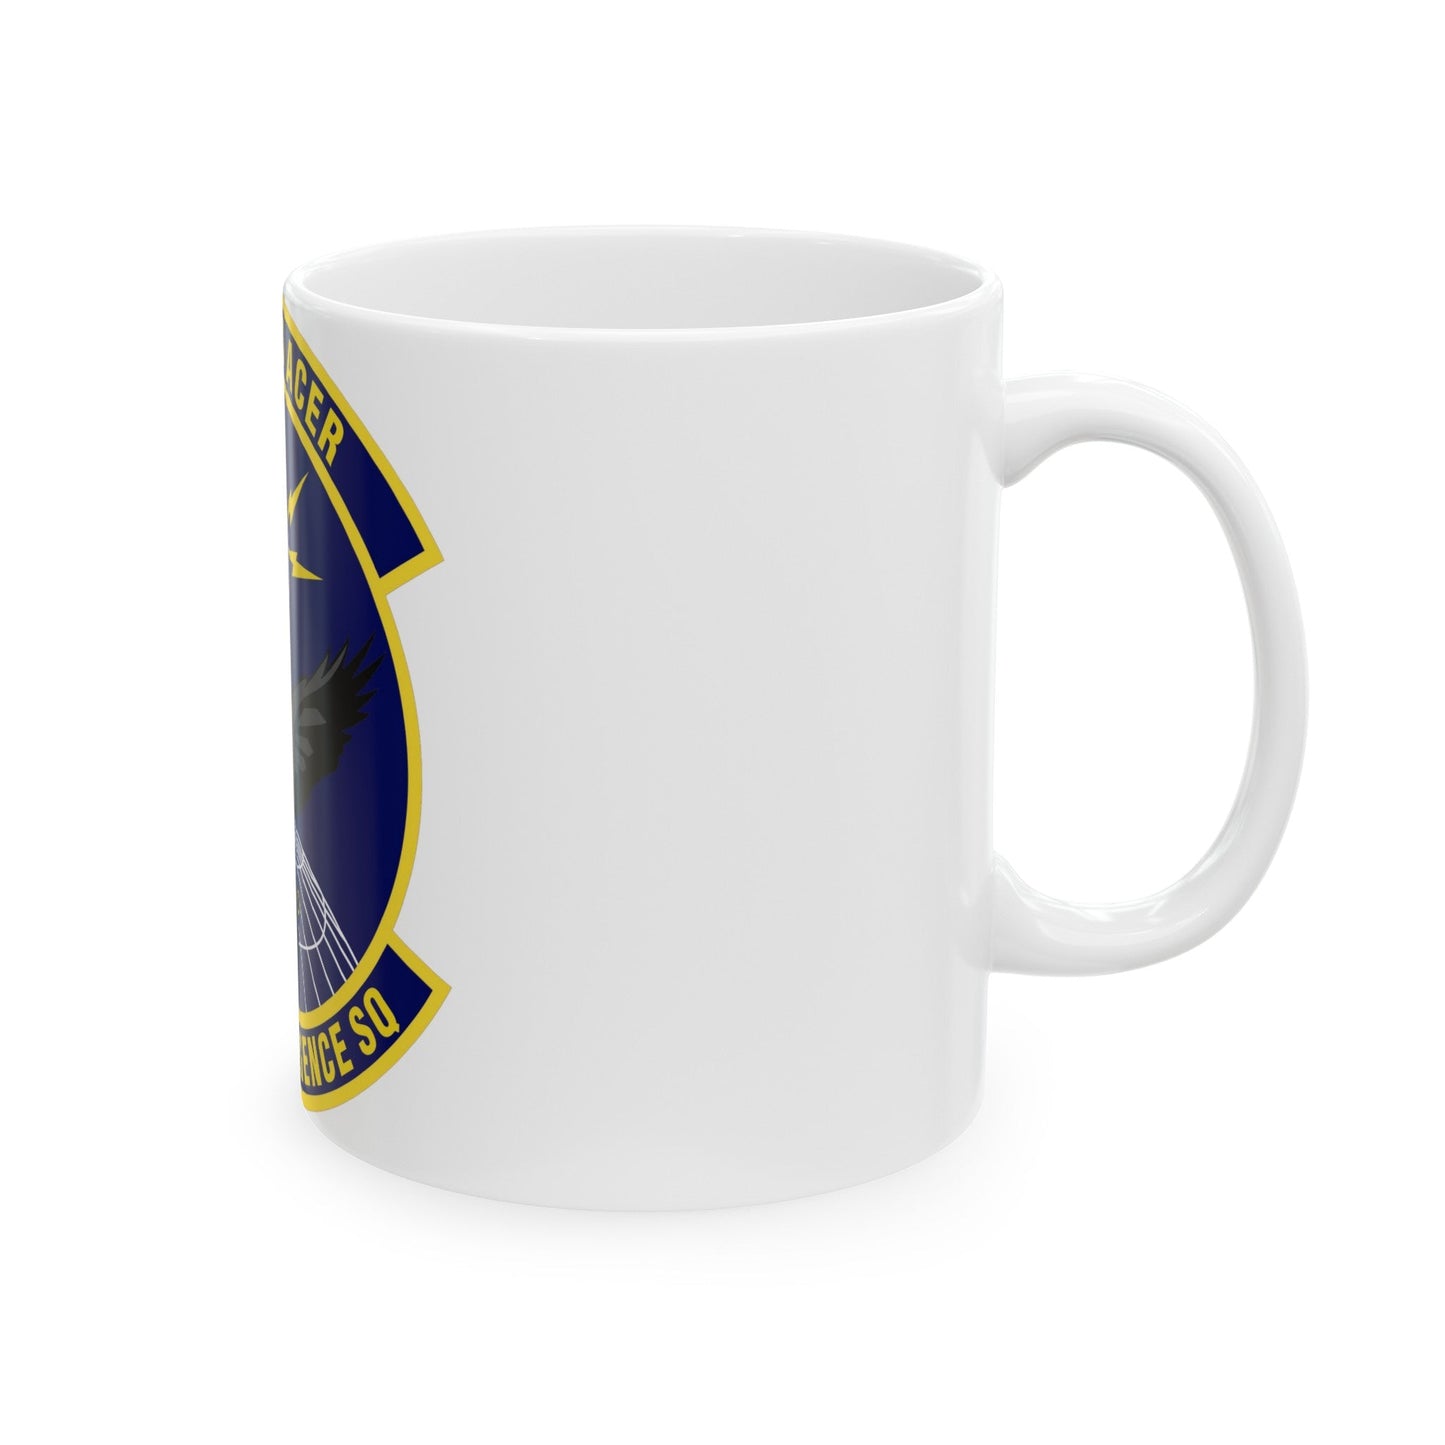 38th Intelligence Squadron (U.S. Air Force) White Coffee Mug